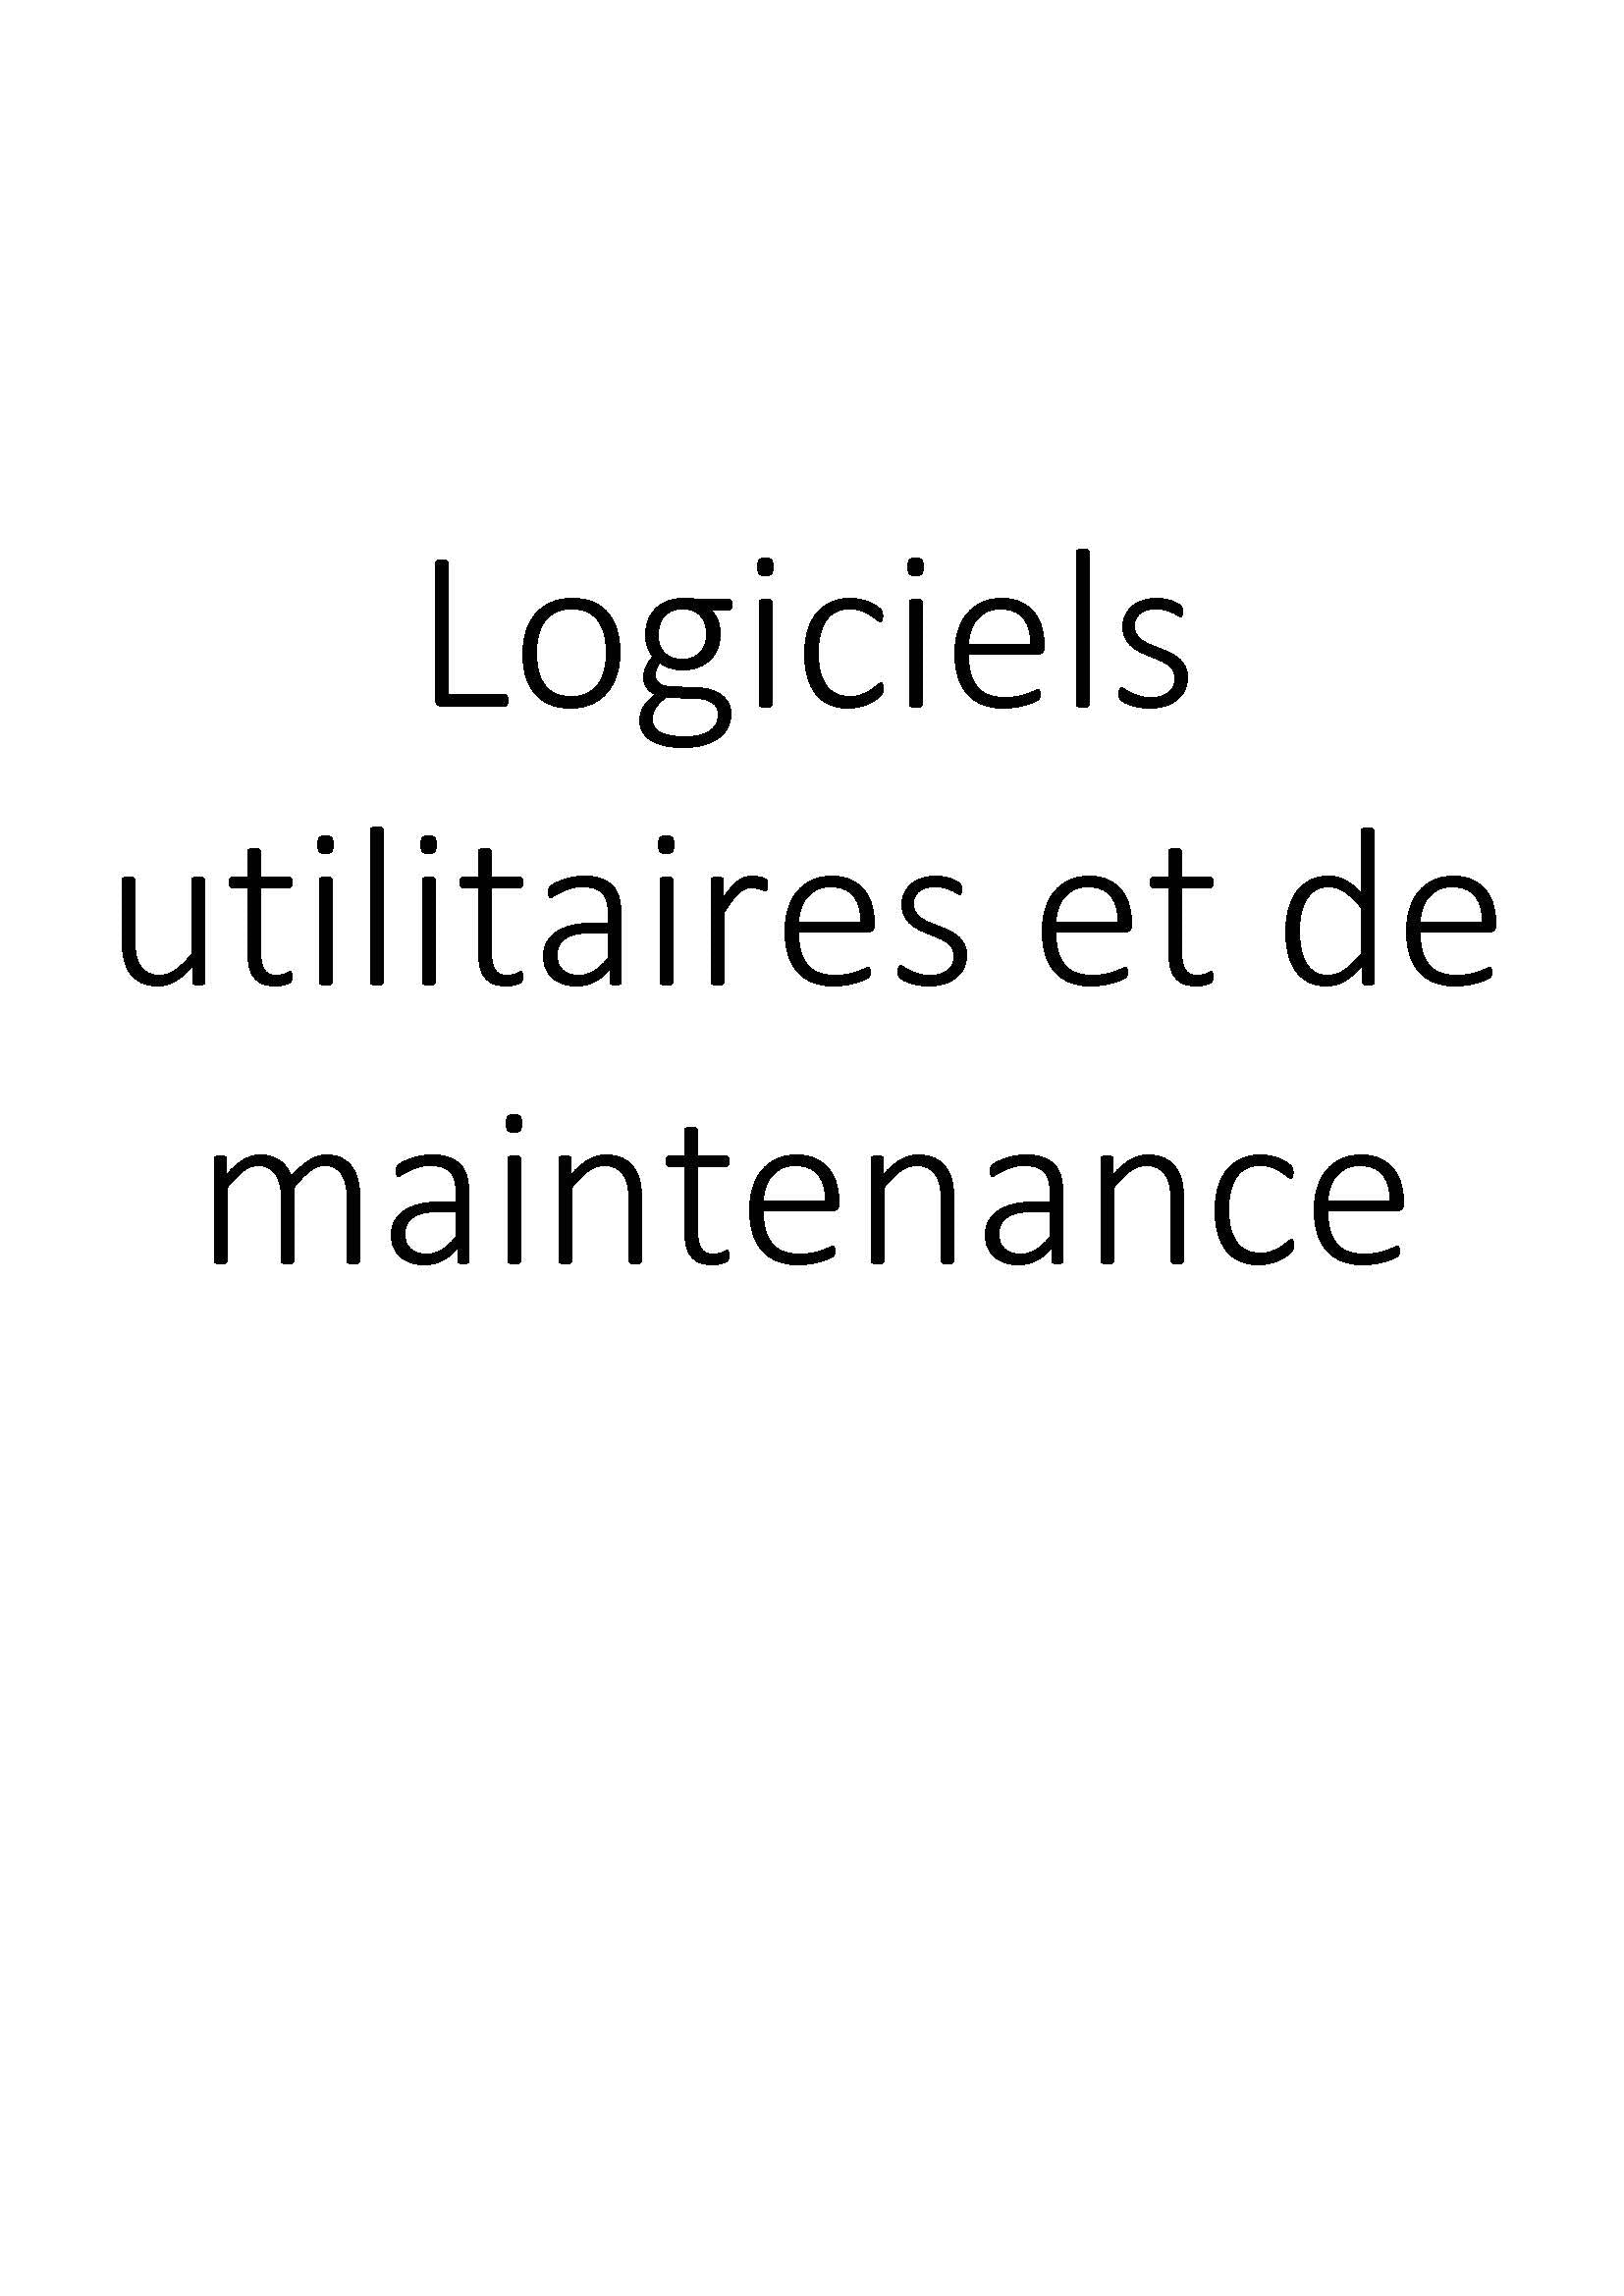 Logiciels utilitaires et de maintenance clicktofournisseur.com